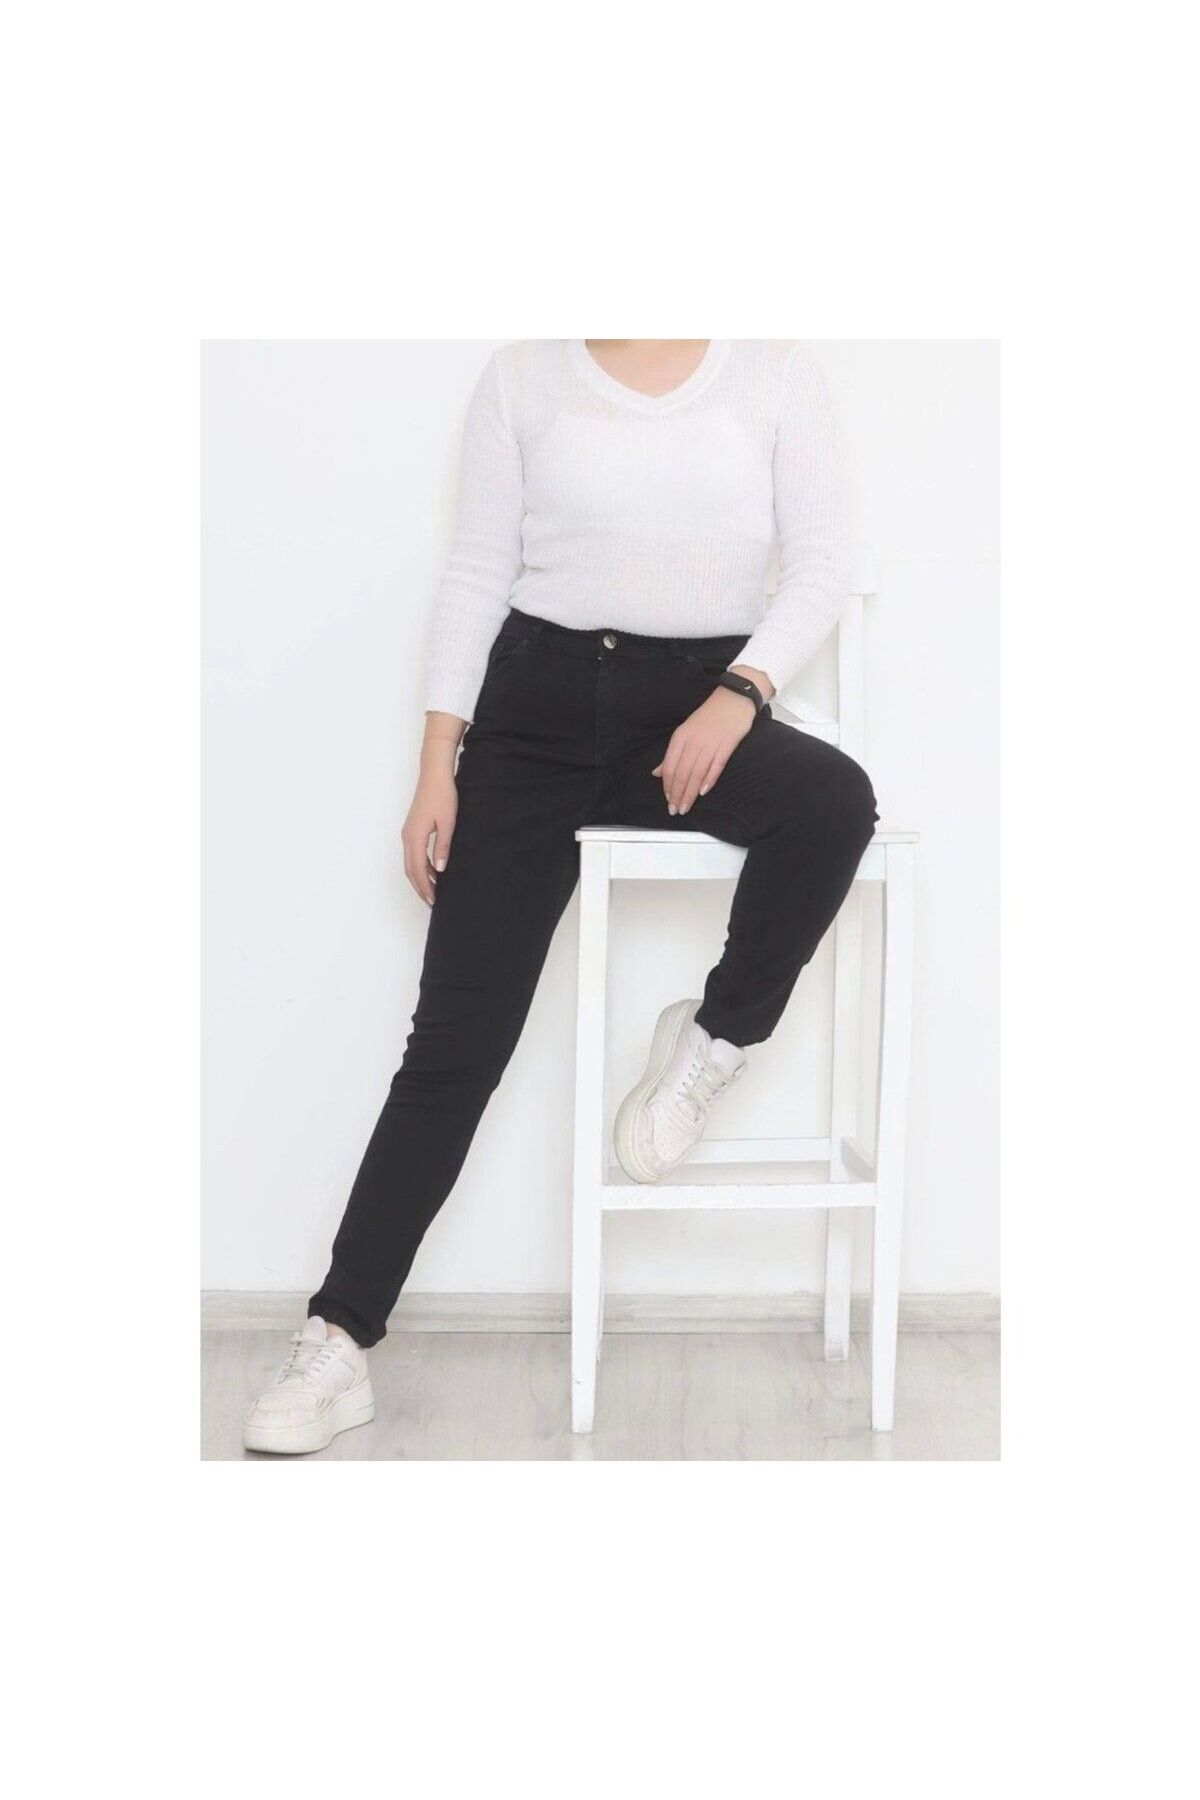 Lixera Koyu Füme Likralı Yüksek Bel Büyük Beden Kadın Jeans Pantolon (TOPARLAYICI)